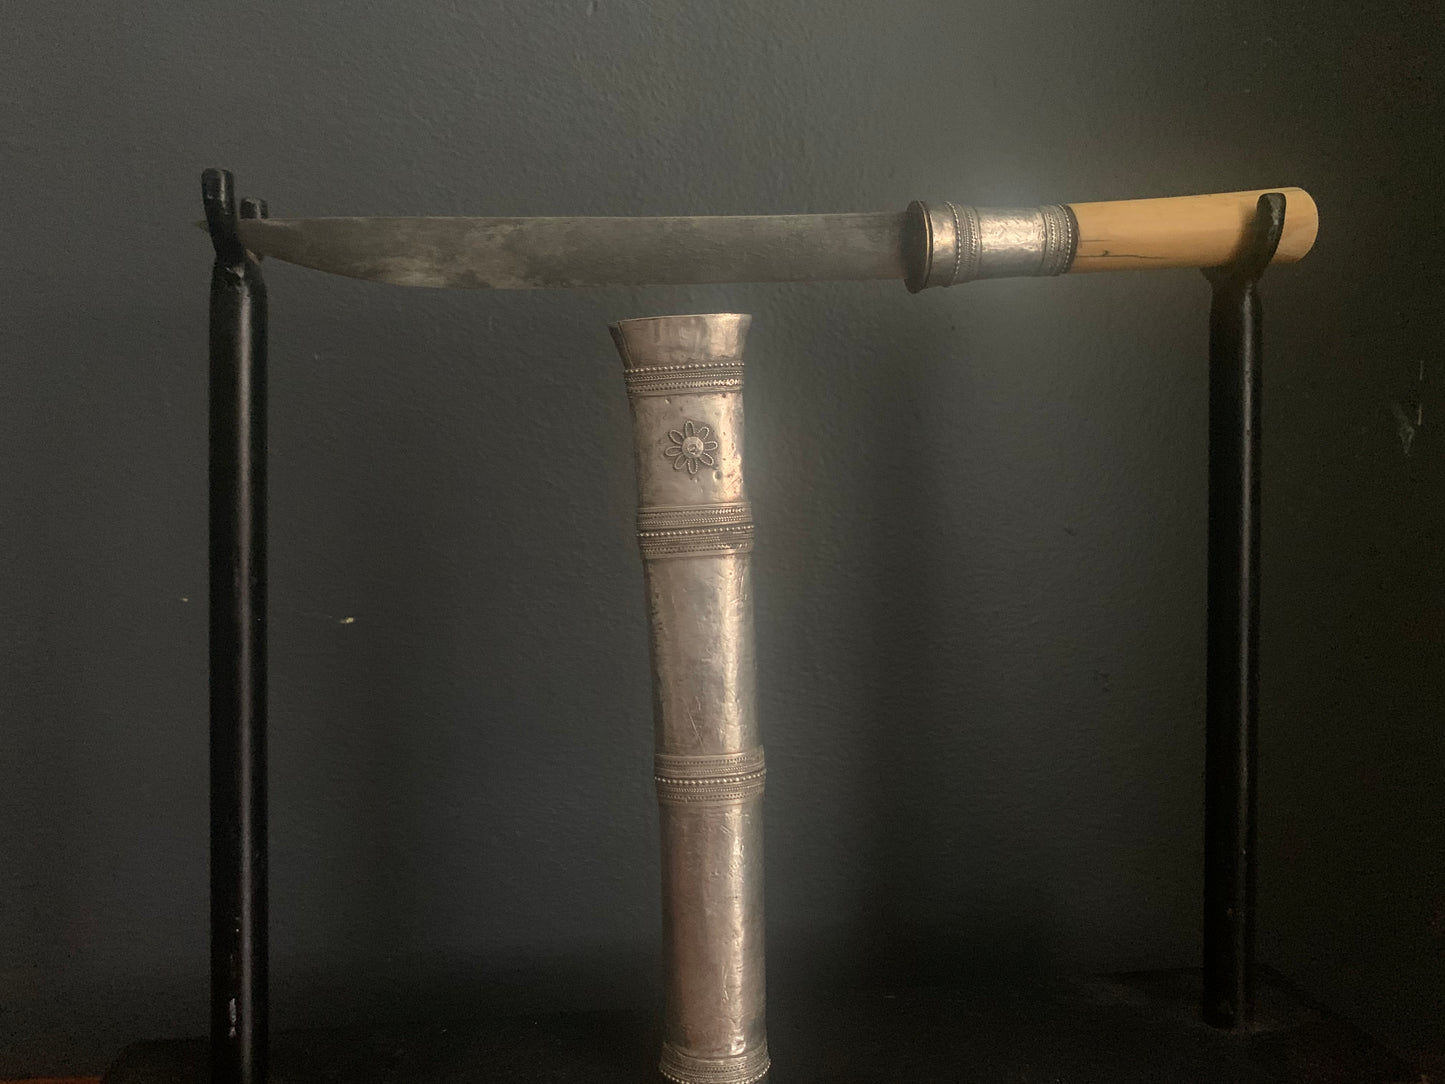 A Burmese Dagger